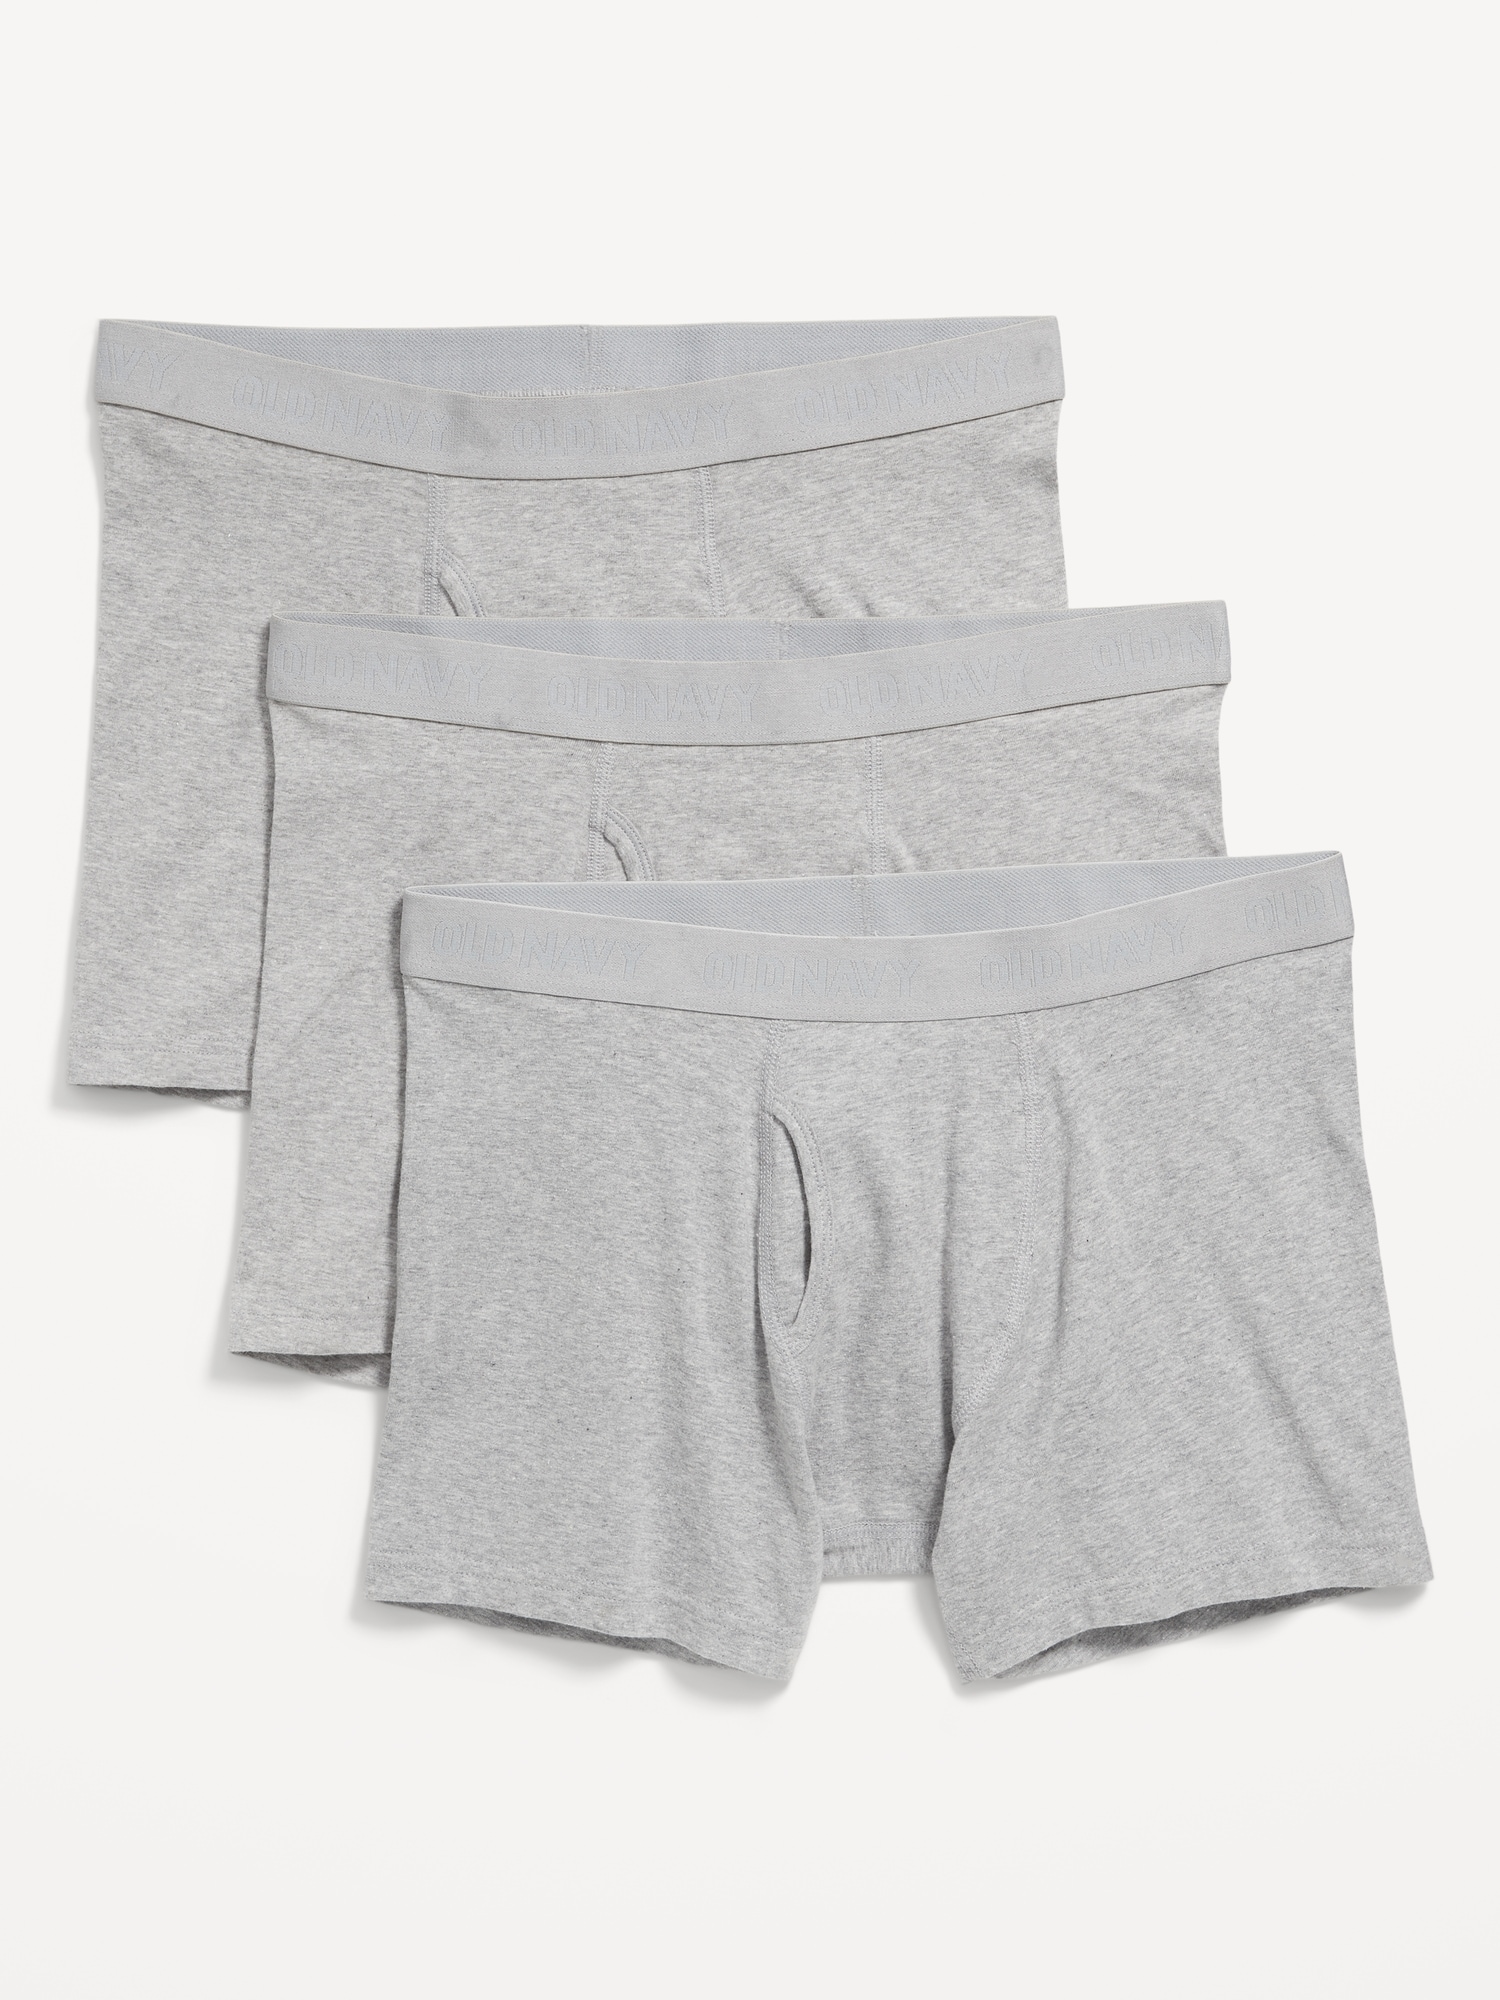 NOS Vintage Kmart 3X 50-52 Boxer shorts Underwear Undies Fly Front